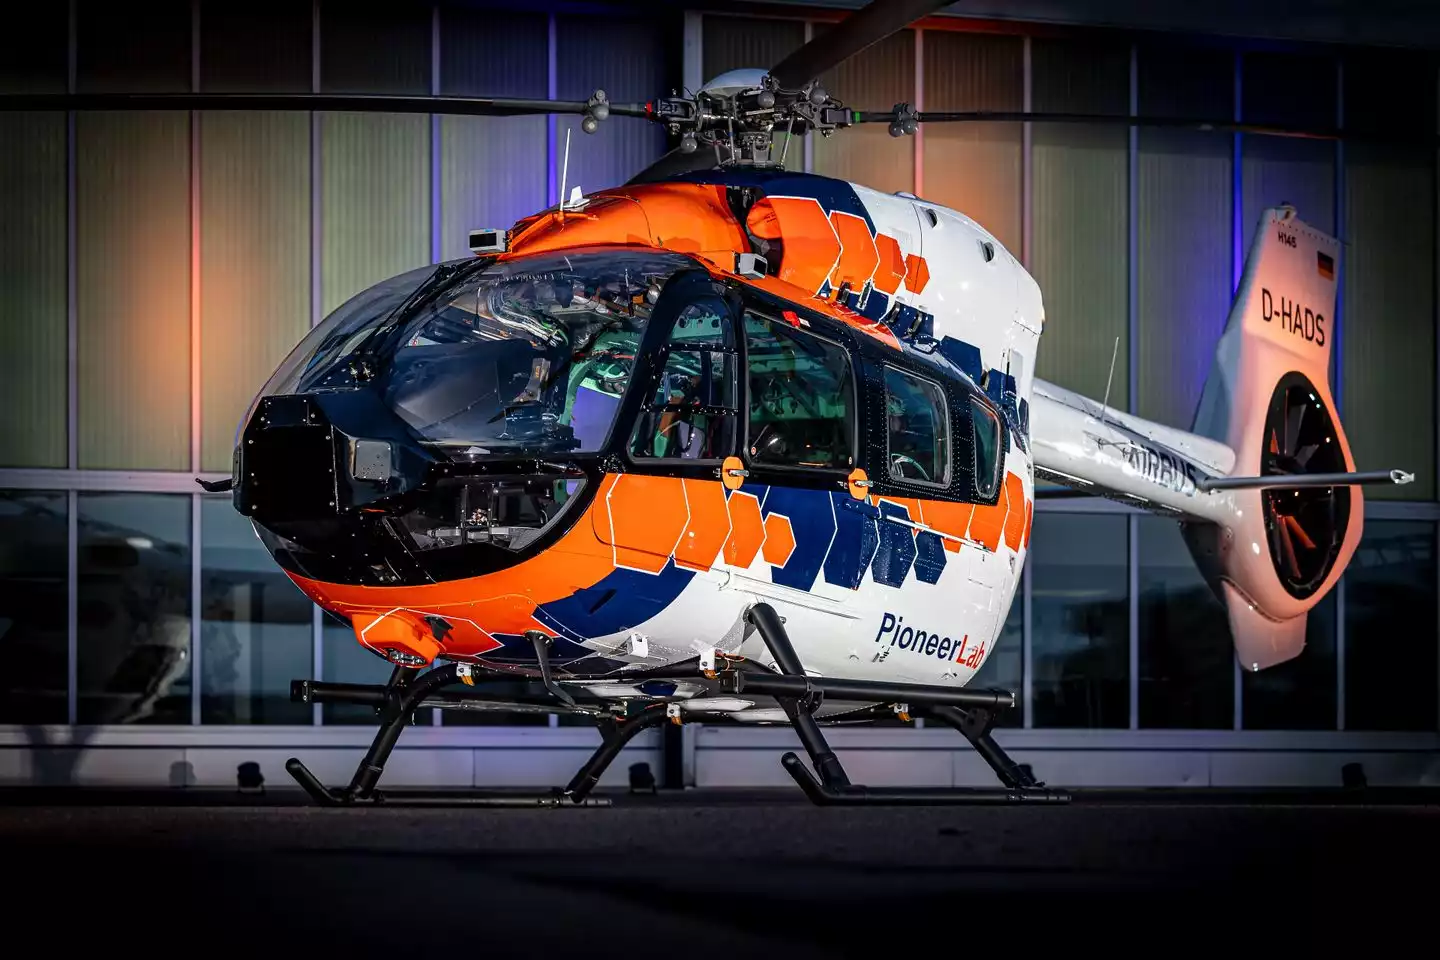 Airbus Helicopters stellt PioneerLab vor, seine neue zweimotorige Technologiedemonstration auf Basis der H145-Plattform